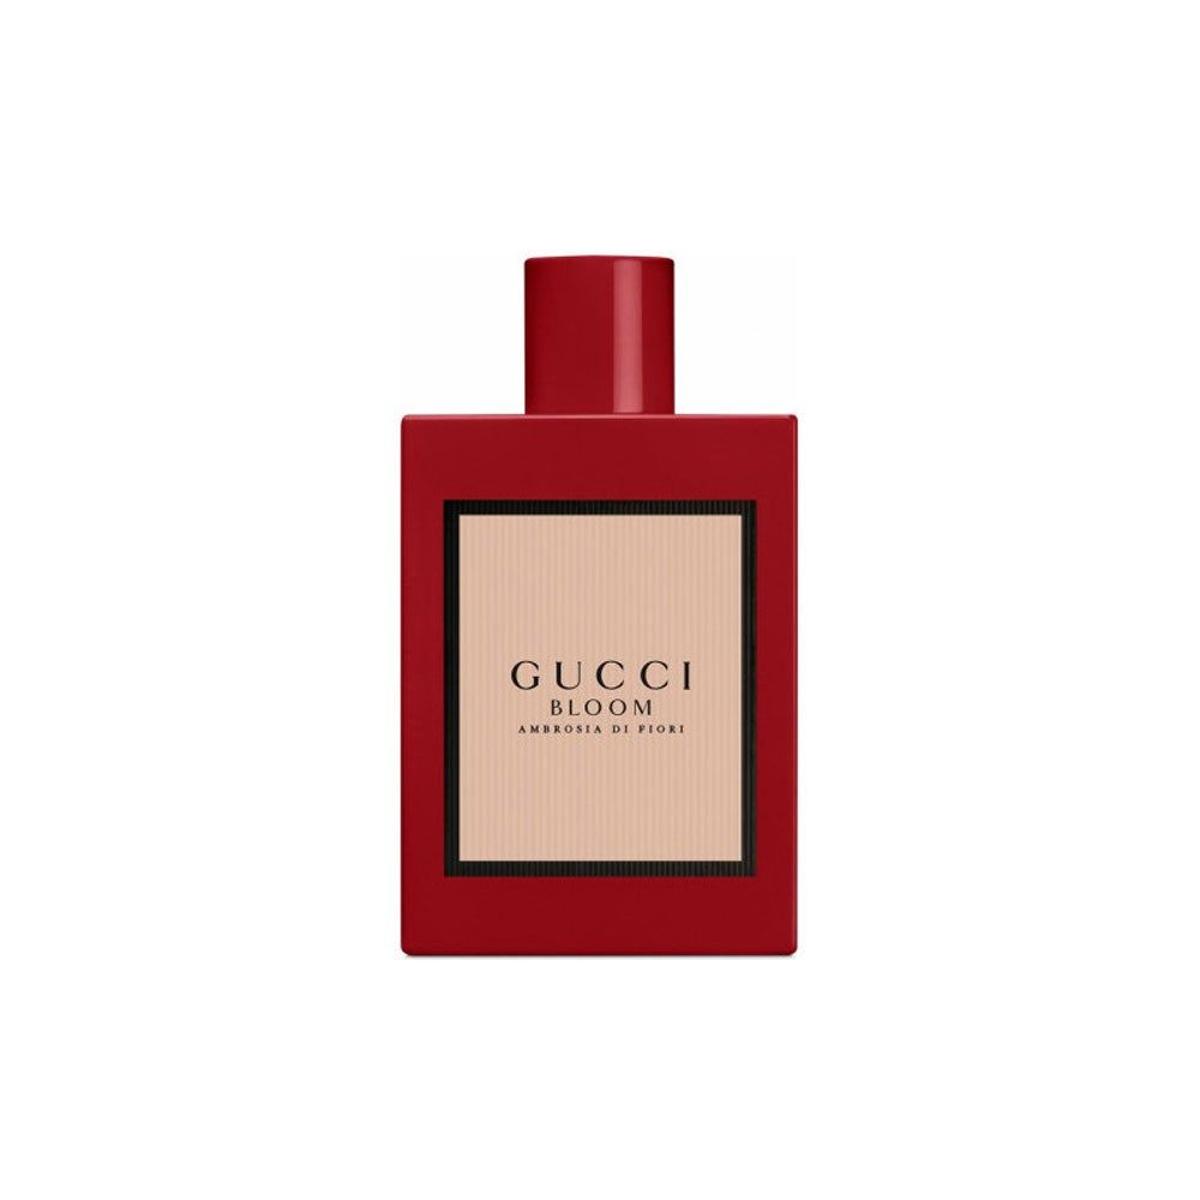 Gucci Bloom Ambrosia di Fiori, de Gucci (Precio: 69,30 euros)